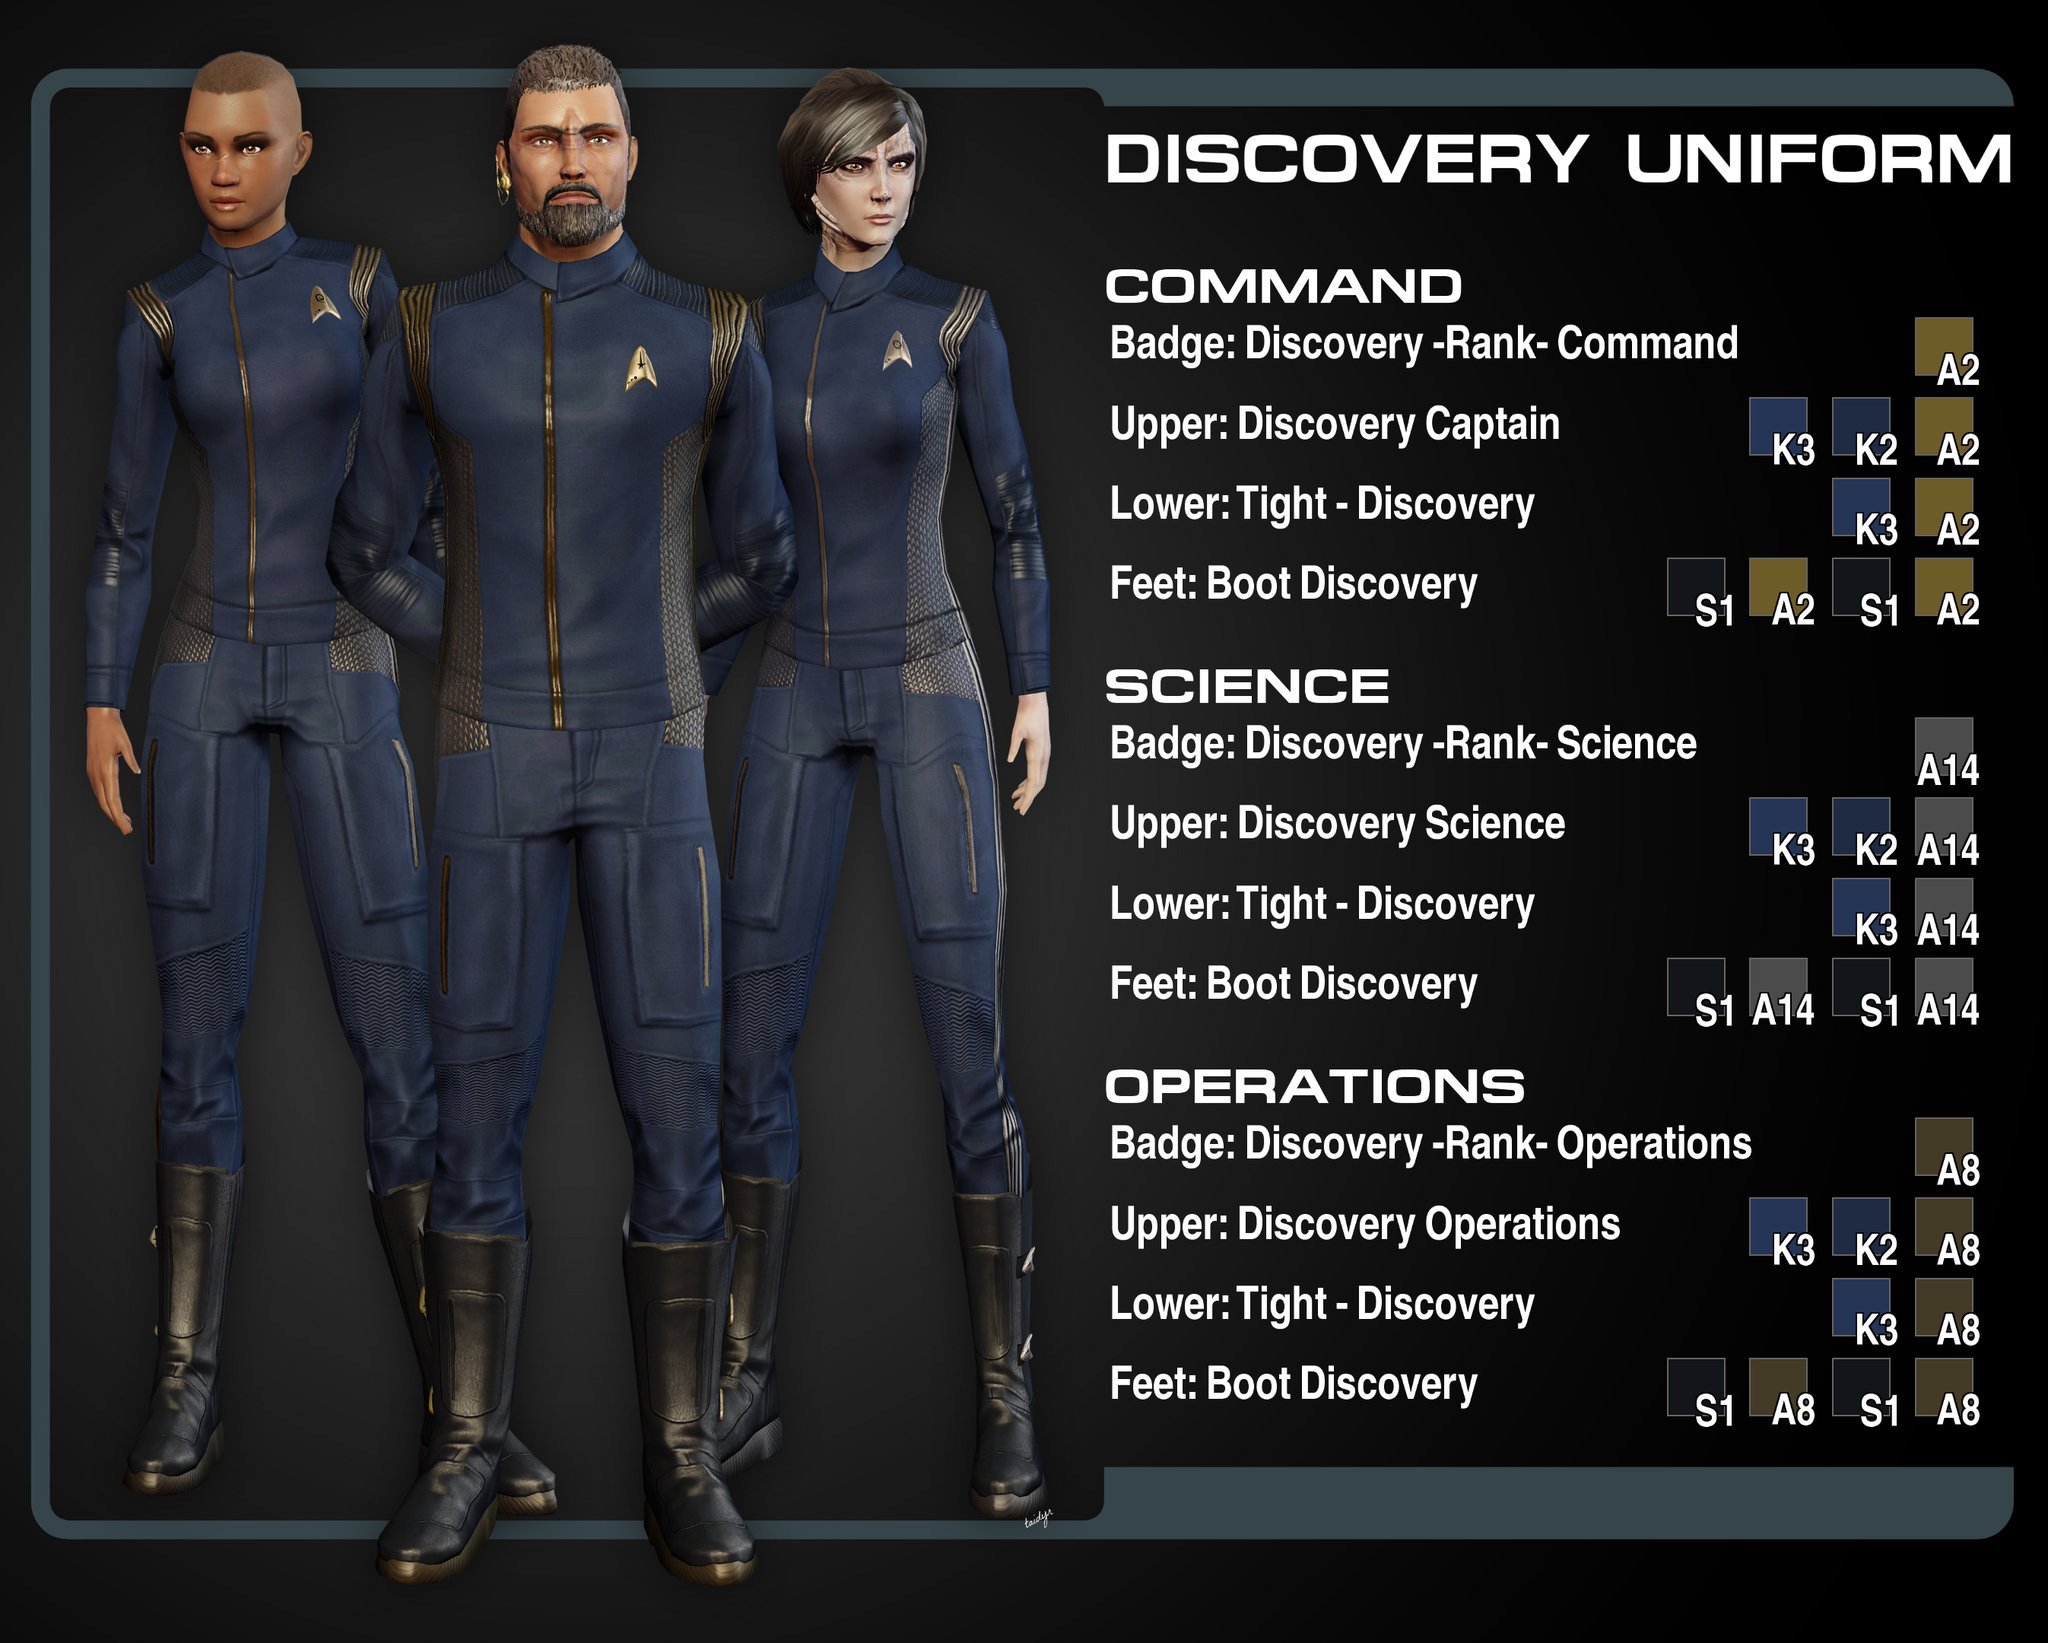 [PC] Obtenez gratuitement les uniformes de Star Trek Discovery ! - Page 2 DLXpLUjXoAElGHK?format=jpg&name=large